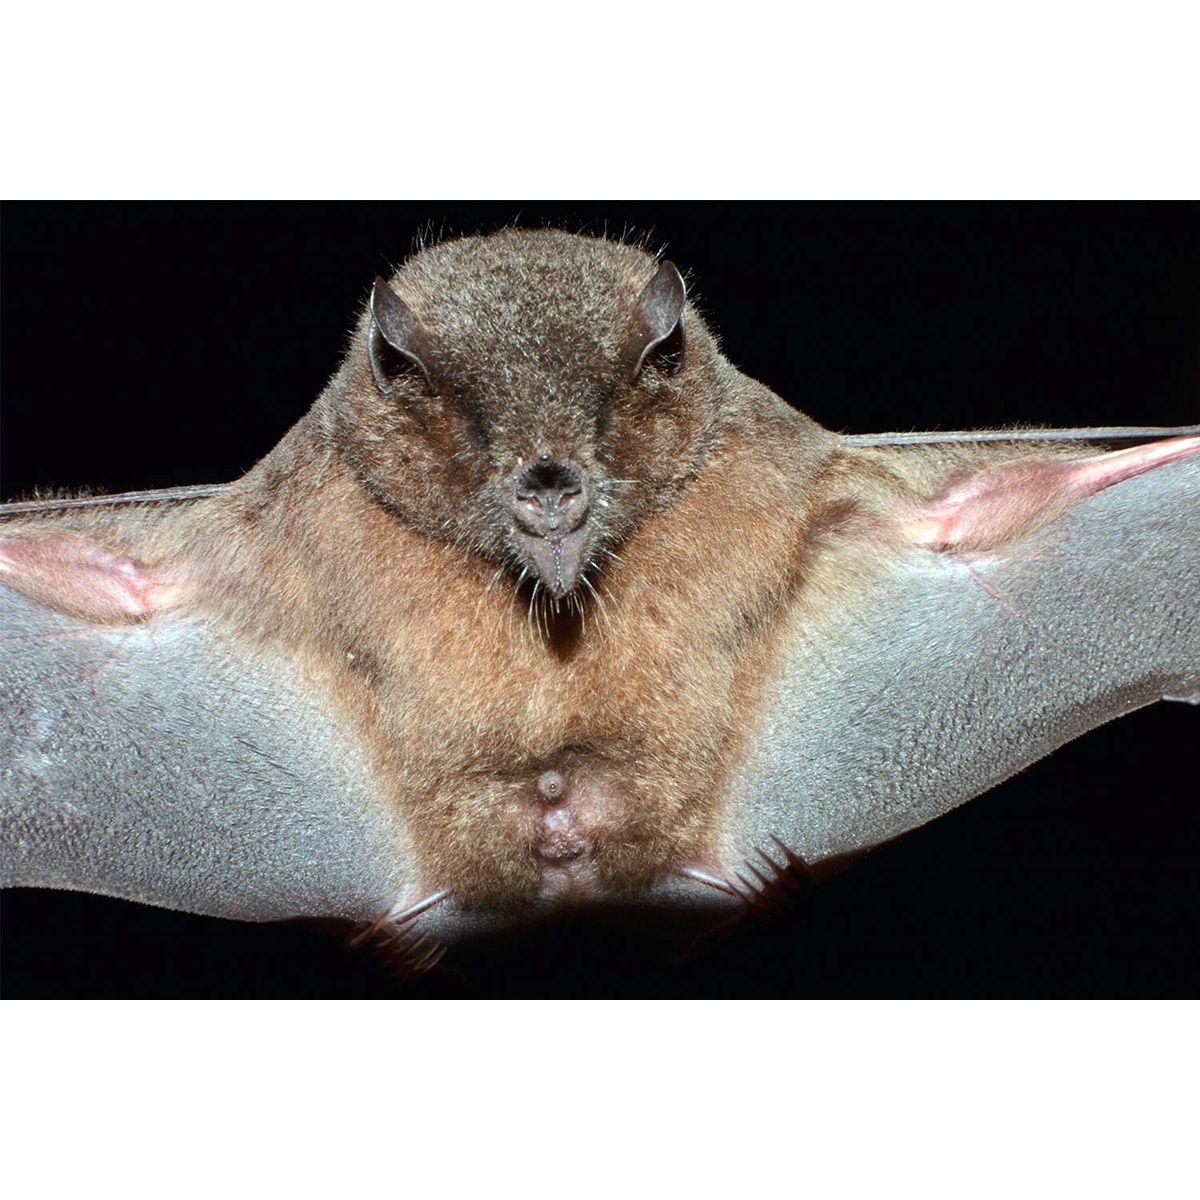 Tube-lipped Nectar Bat (Anoura fistulata) Фото №6